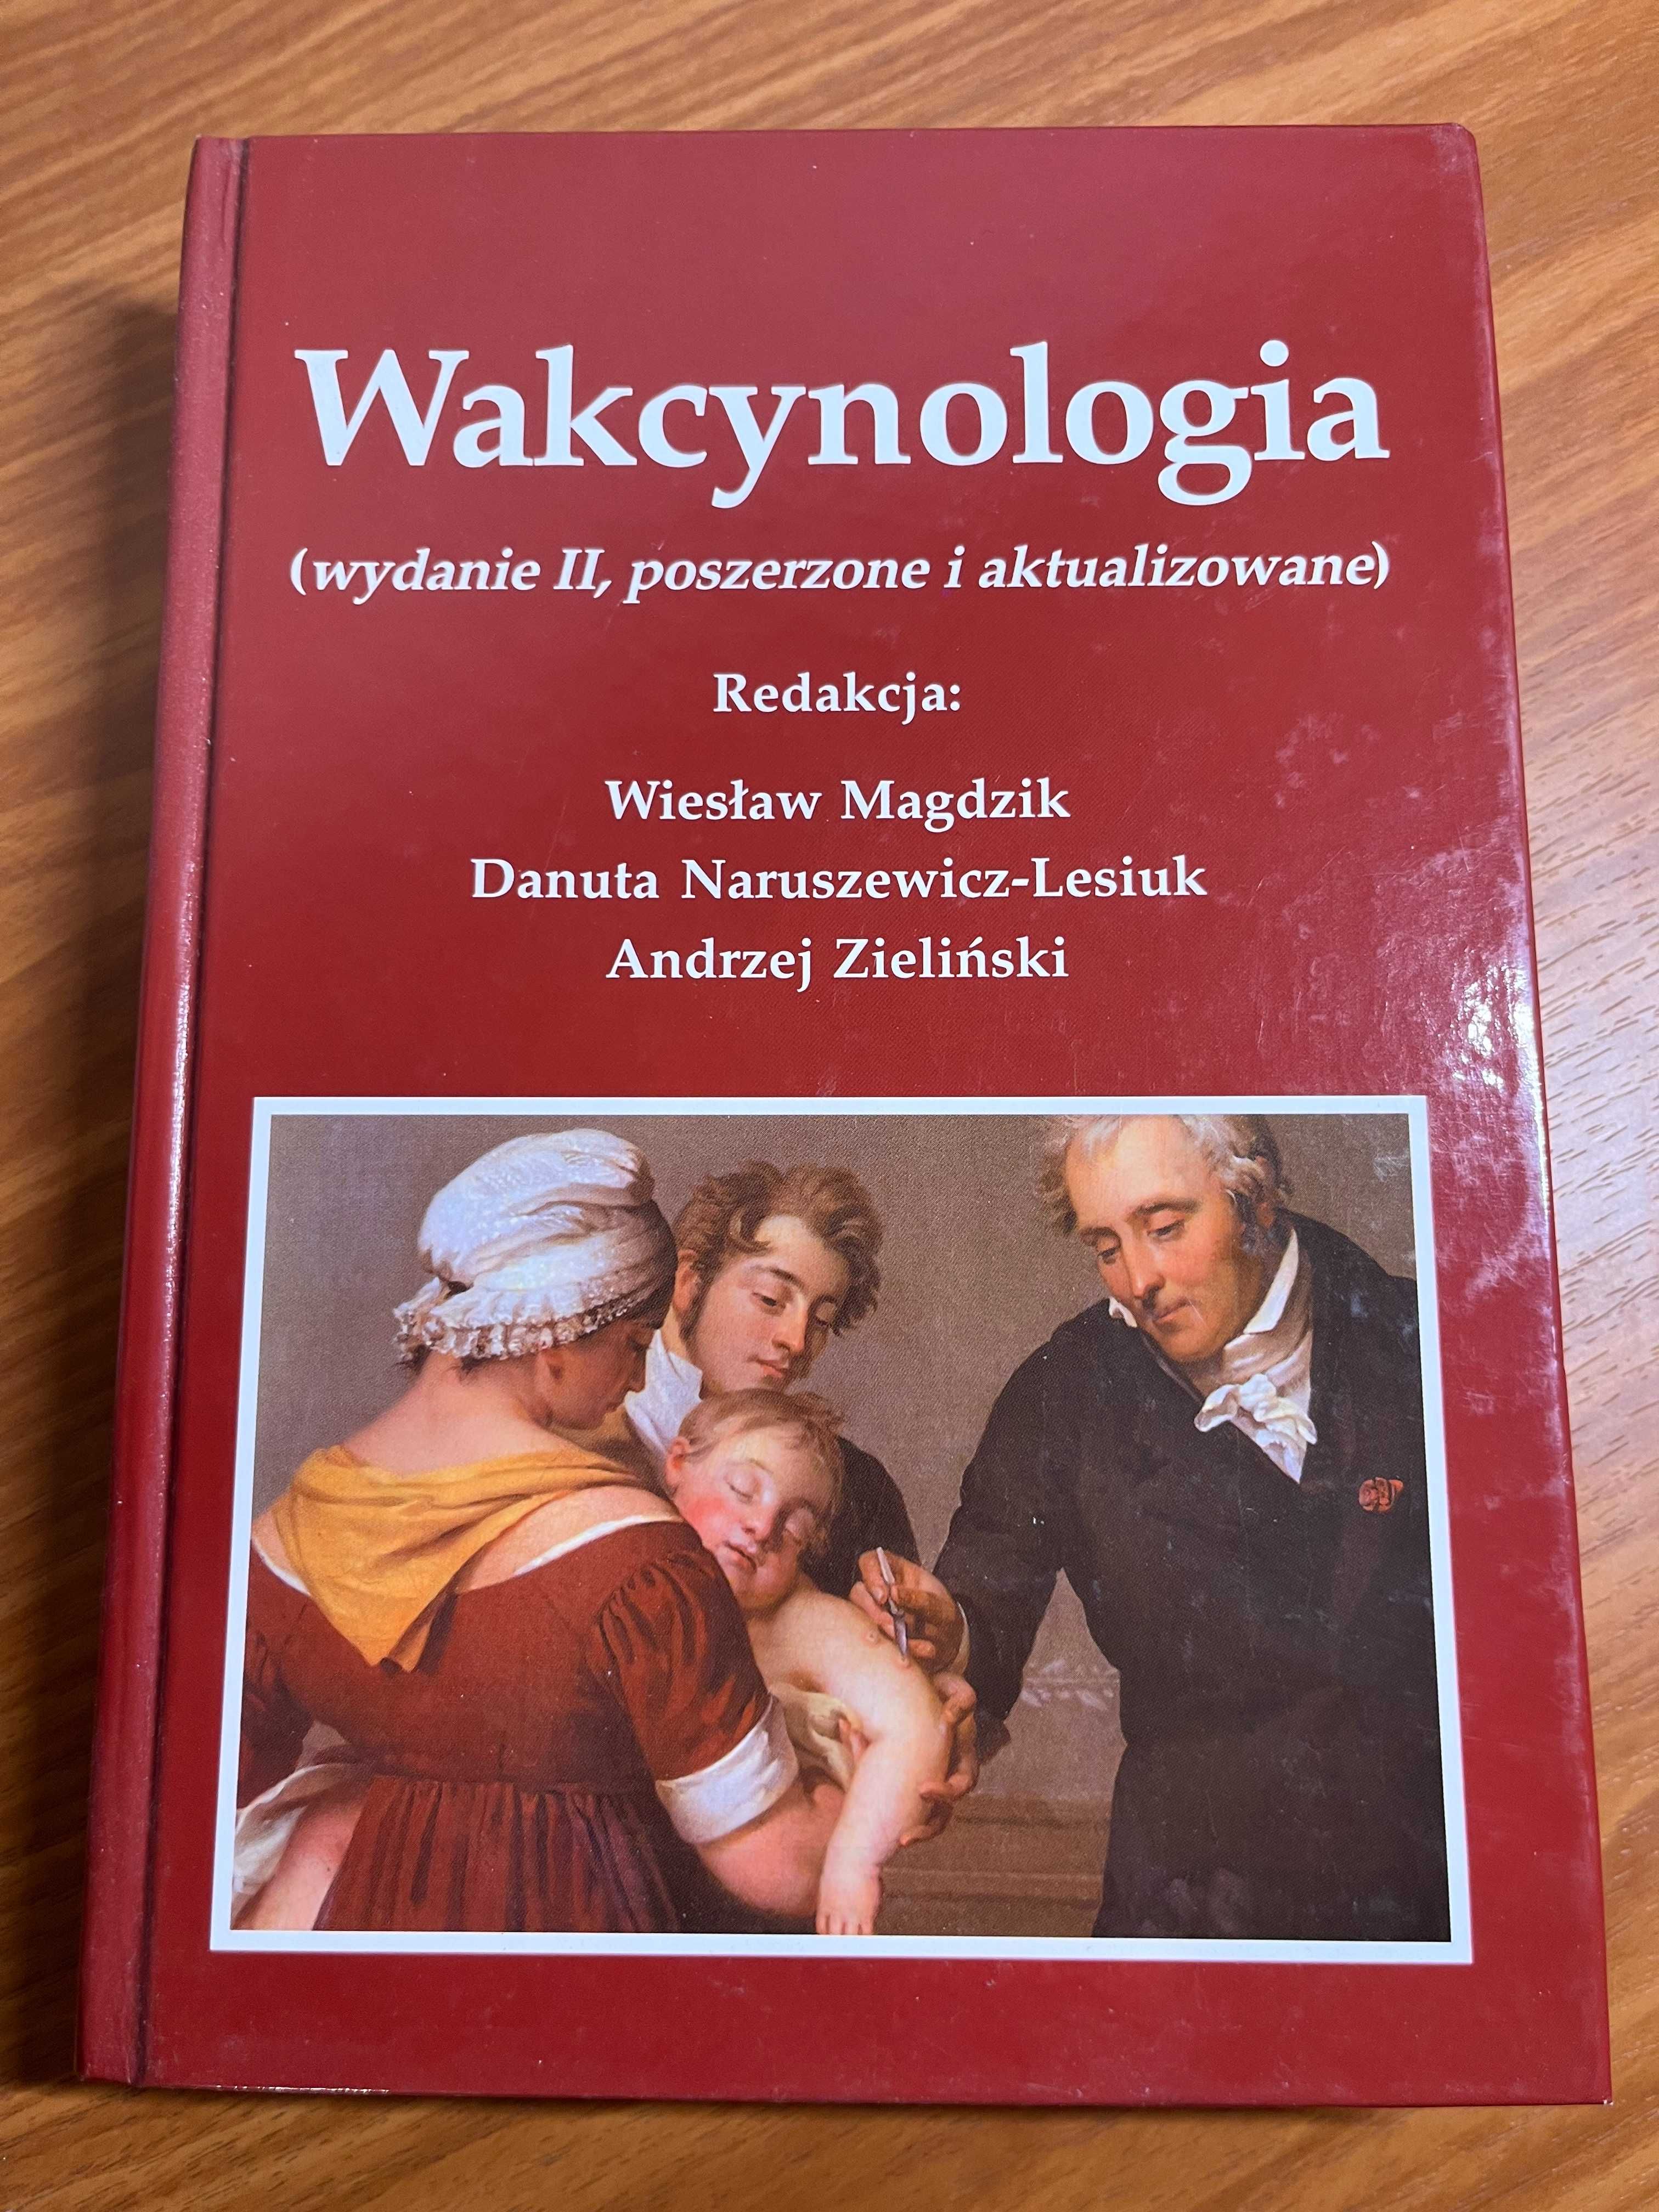 Wakcynologia - W. Magdzik - wyd. II